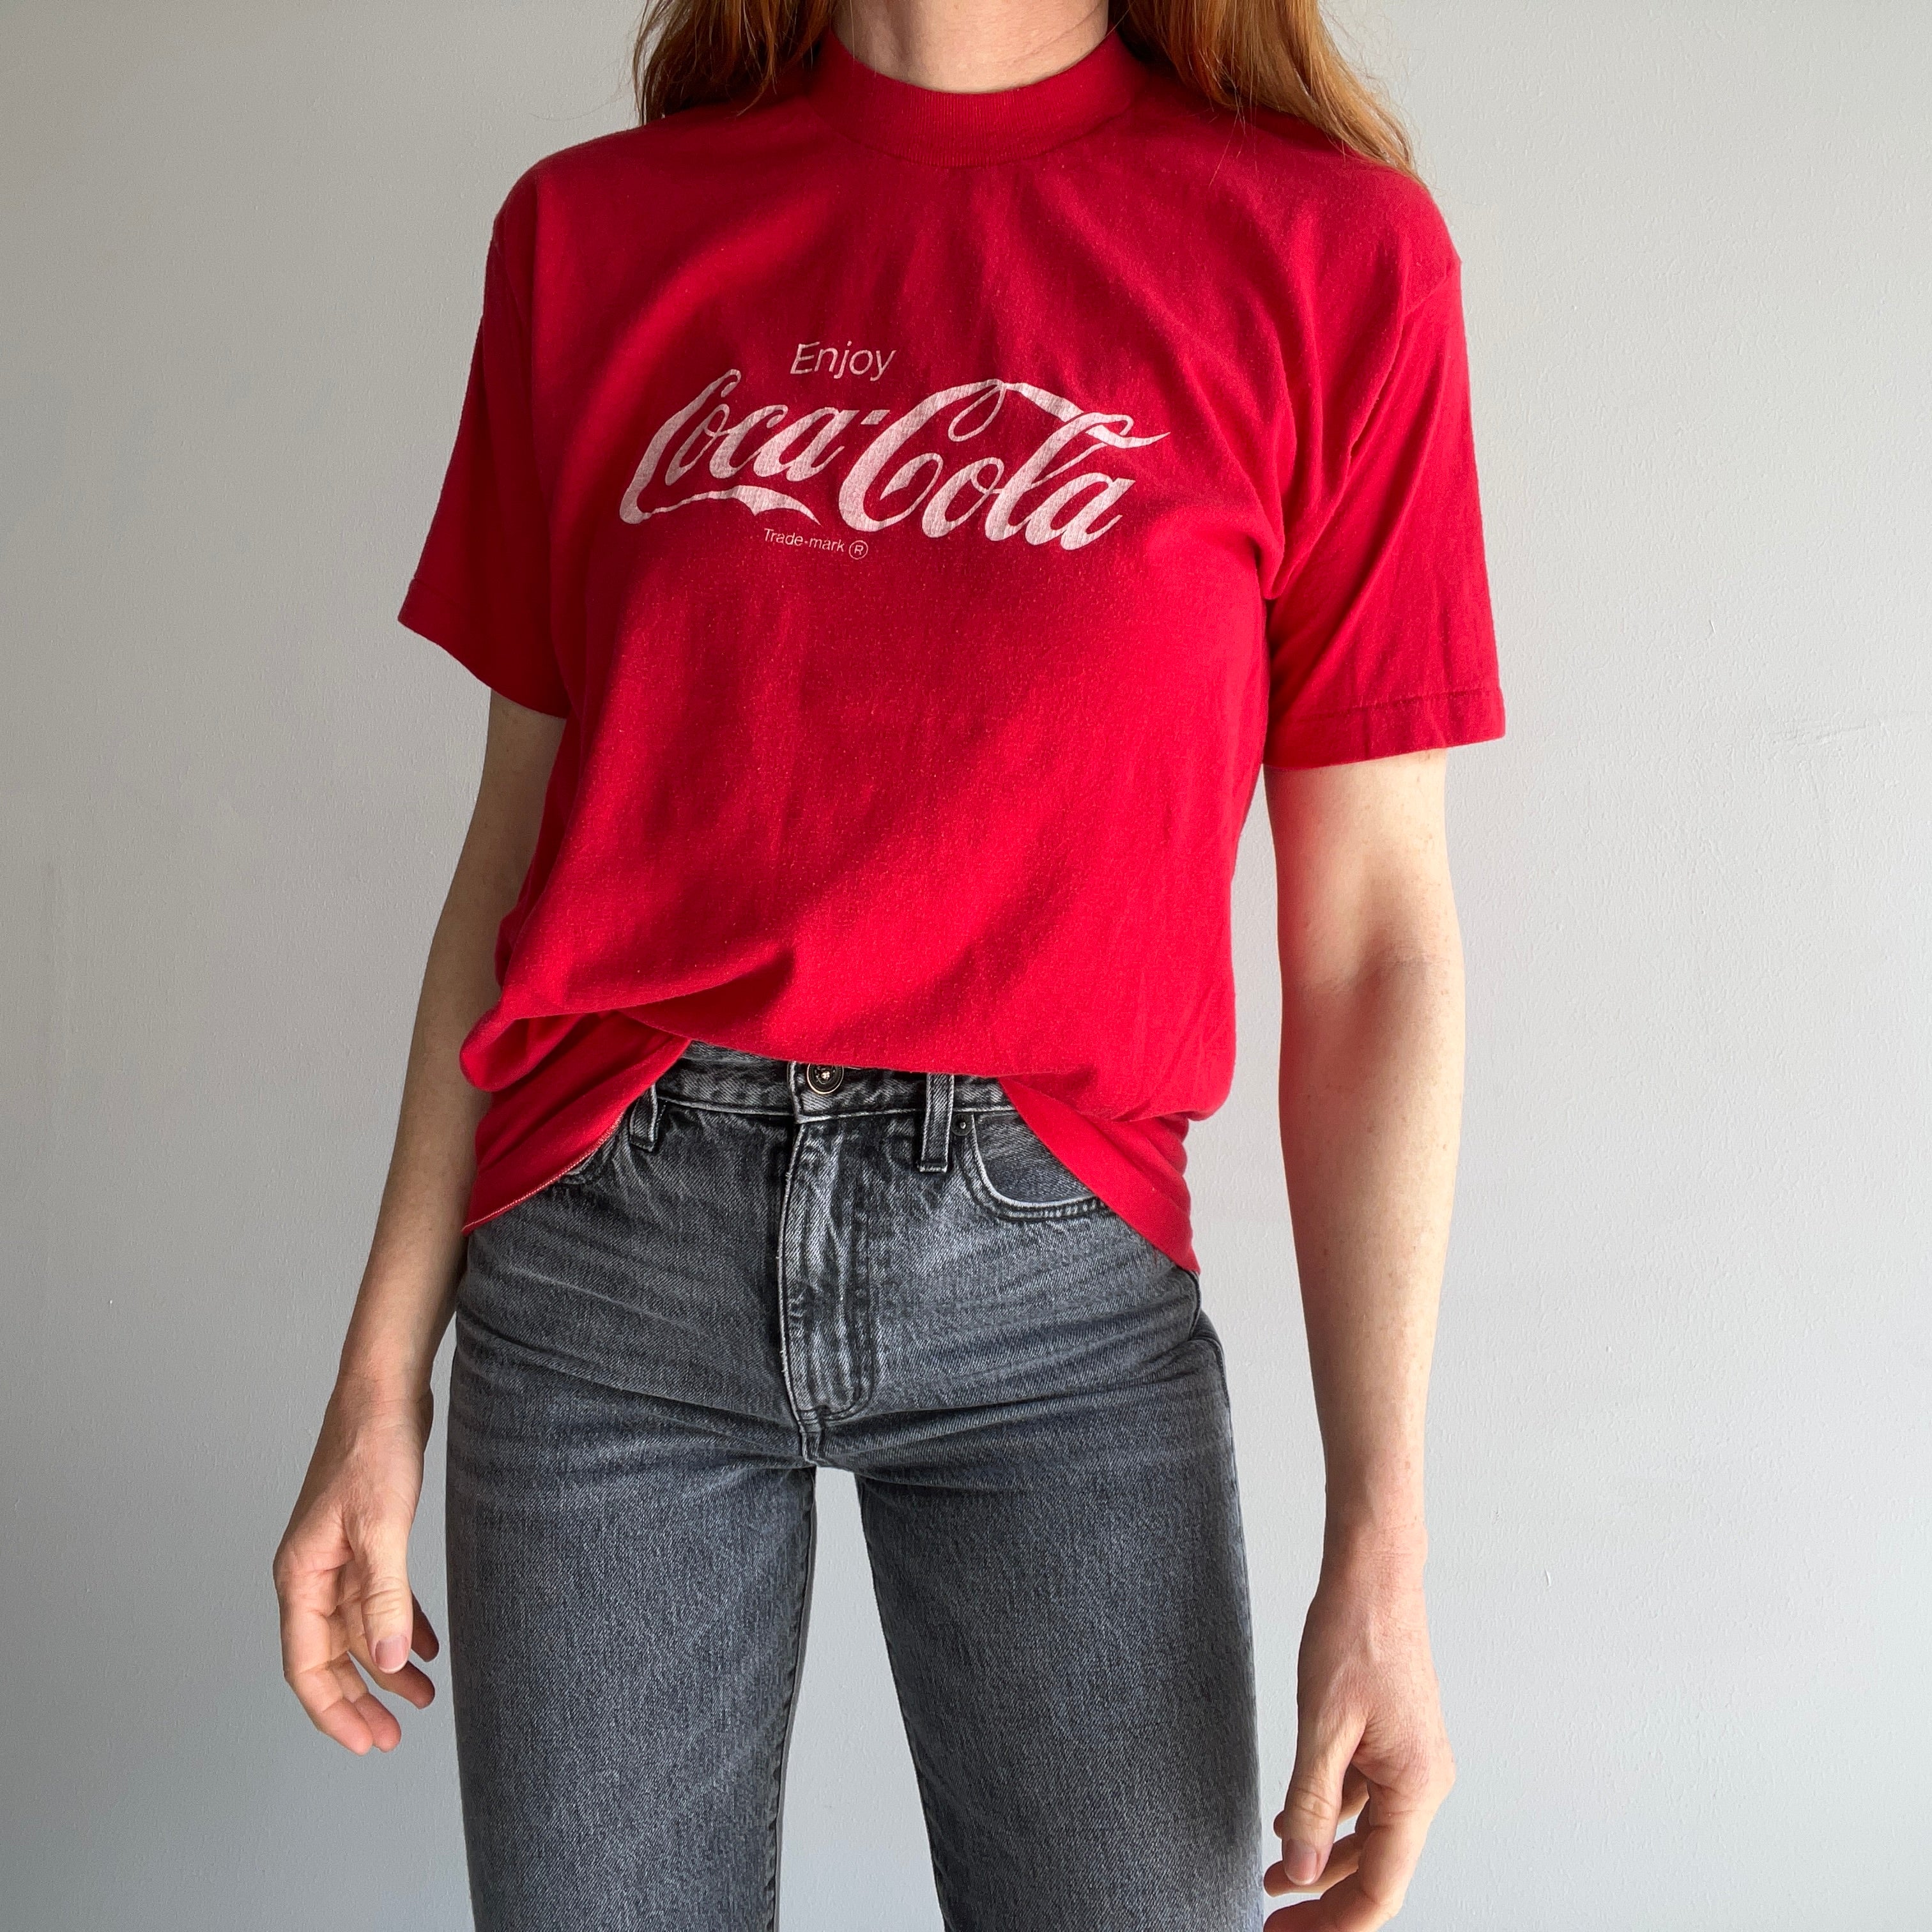 T-shirt Coke des années 1970 par Signal - La vraie affaire !